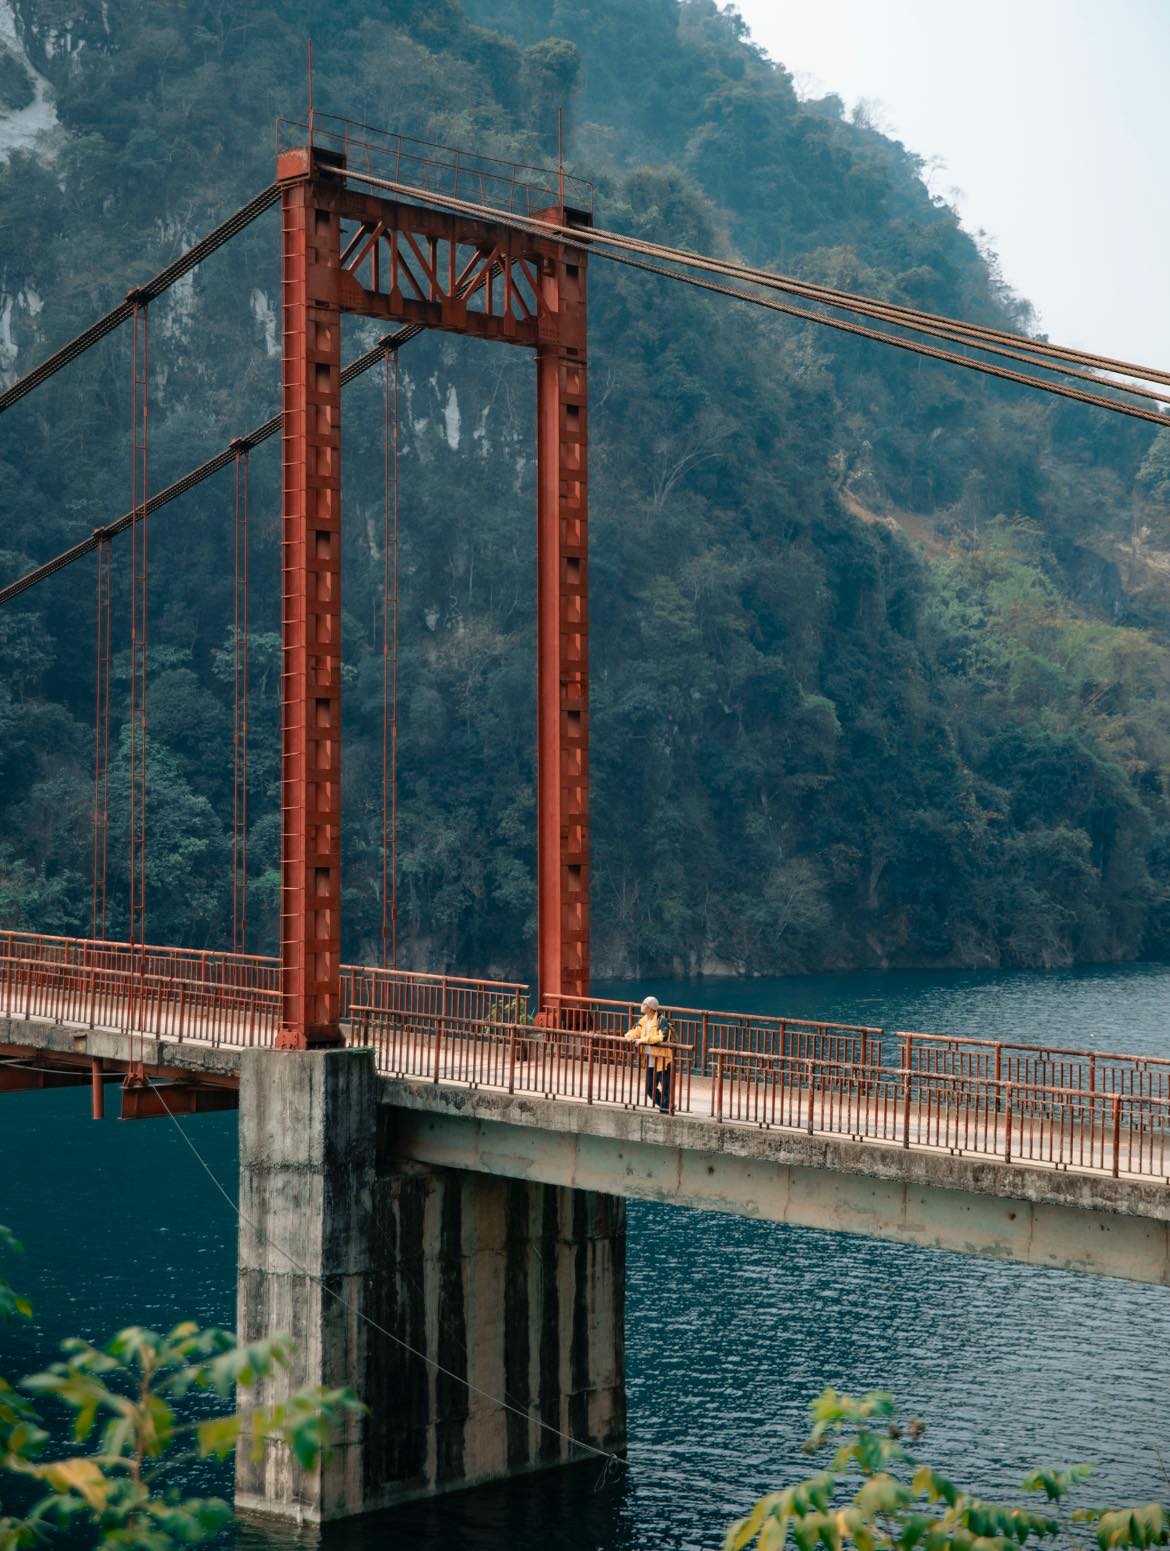 Phát hiện cây cầu treo đẹp như tranh vẽ giữa núi rừng Điện Biên, nhiều người không ngờ đây là khung cảnh tại Việt Nam- Ảnh 7.